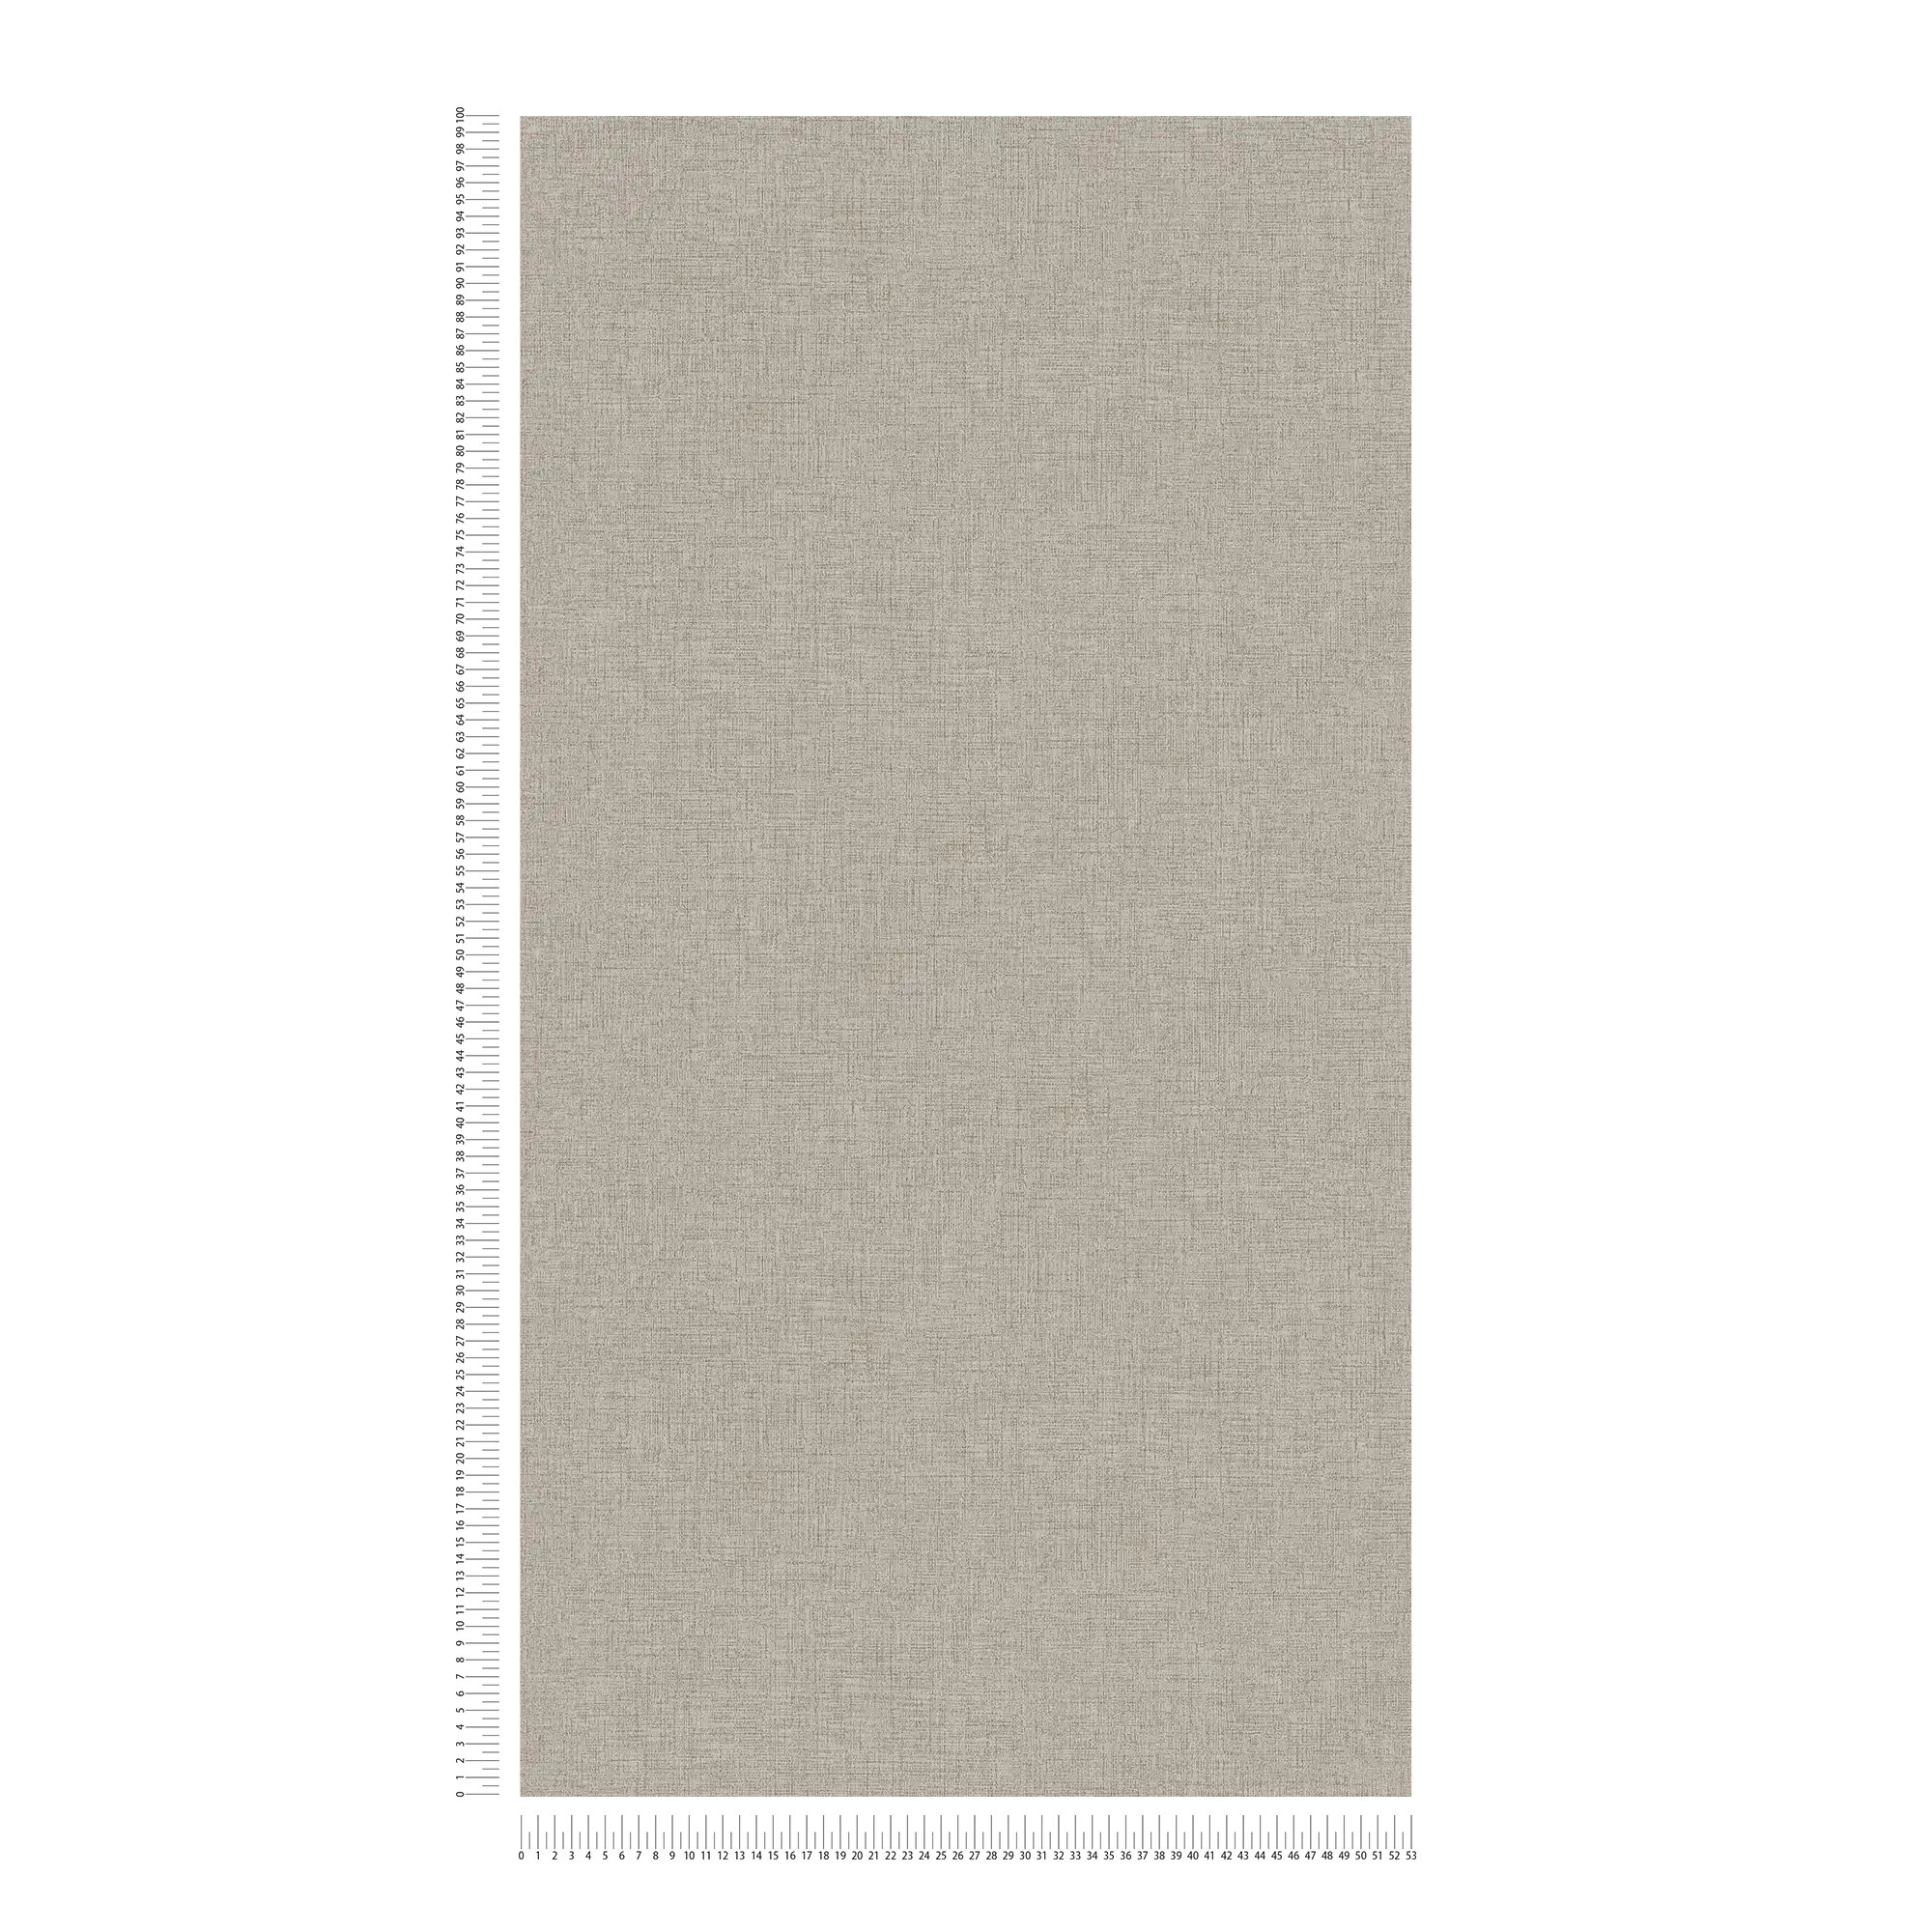             papier peint imitation lin uni, neutre - beige
        